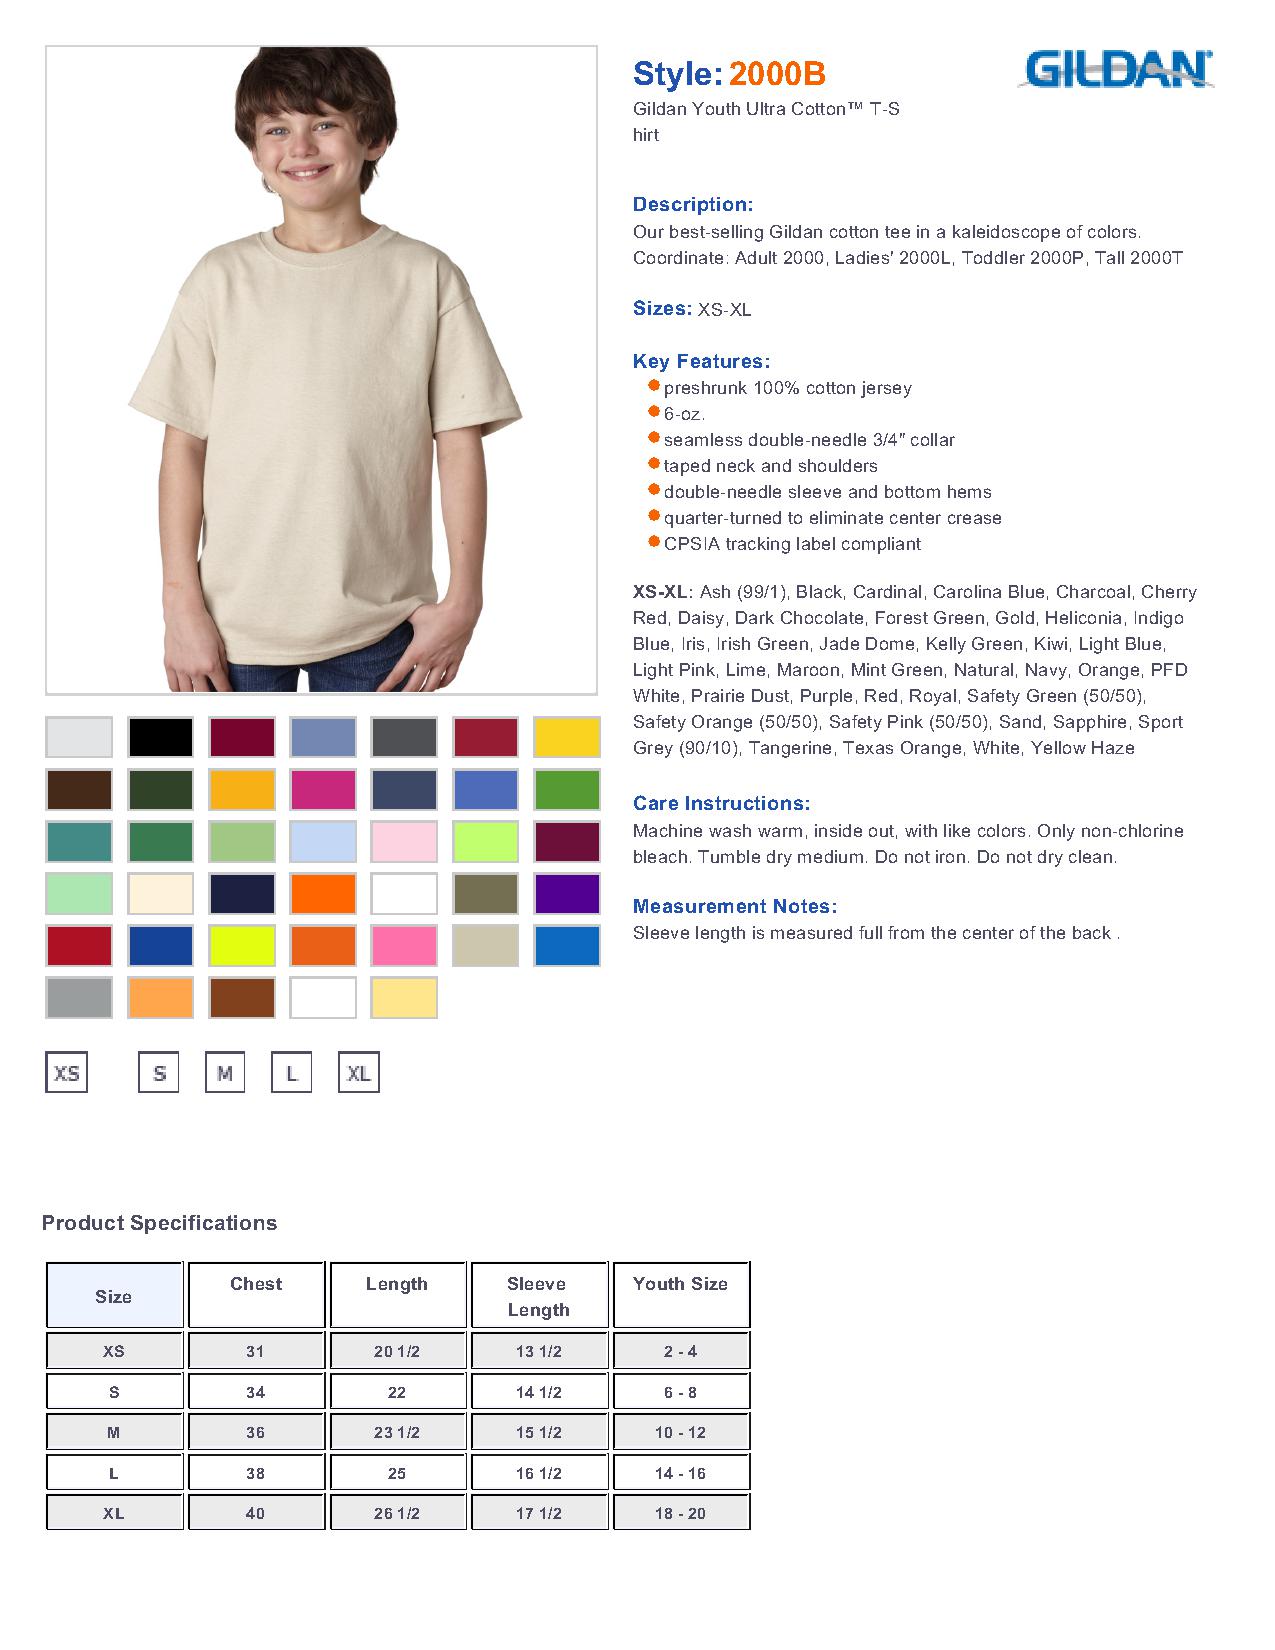 Gildan Ultra Cotton T Shirt Size Chart